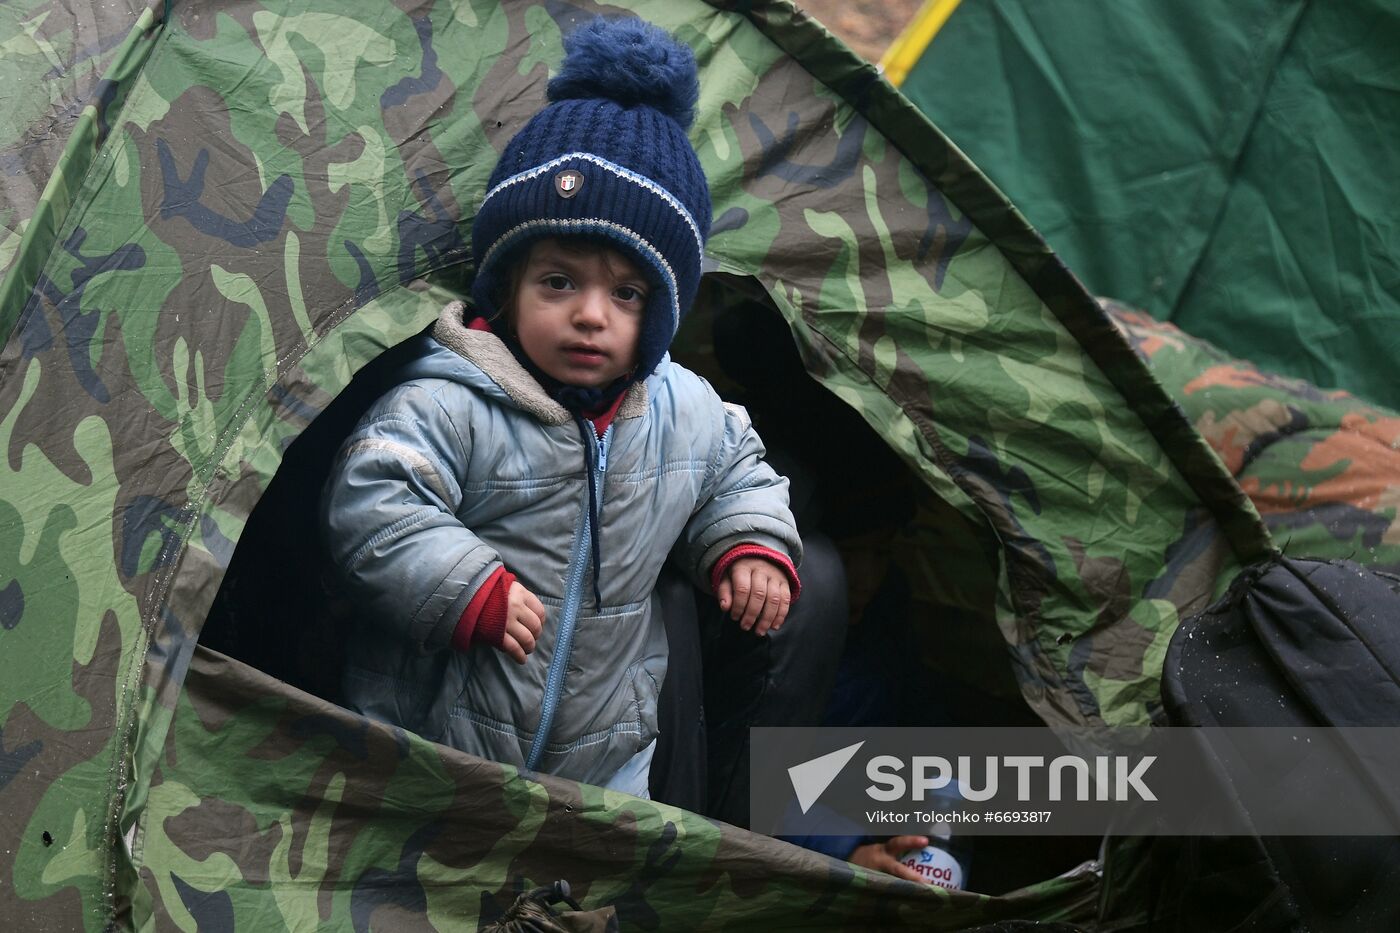 Belarus Poland Border Refugees